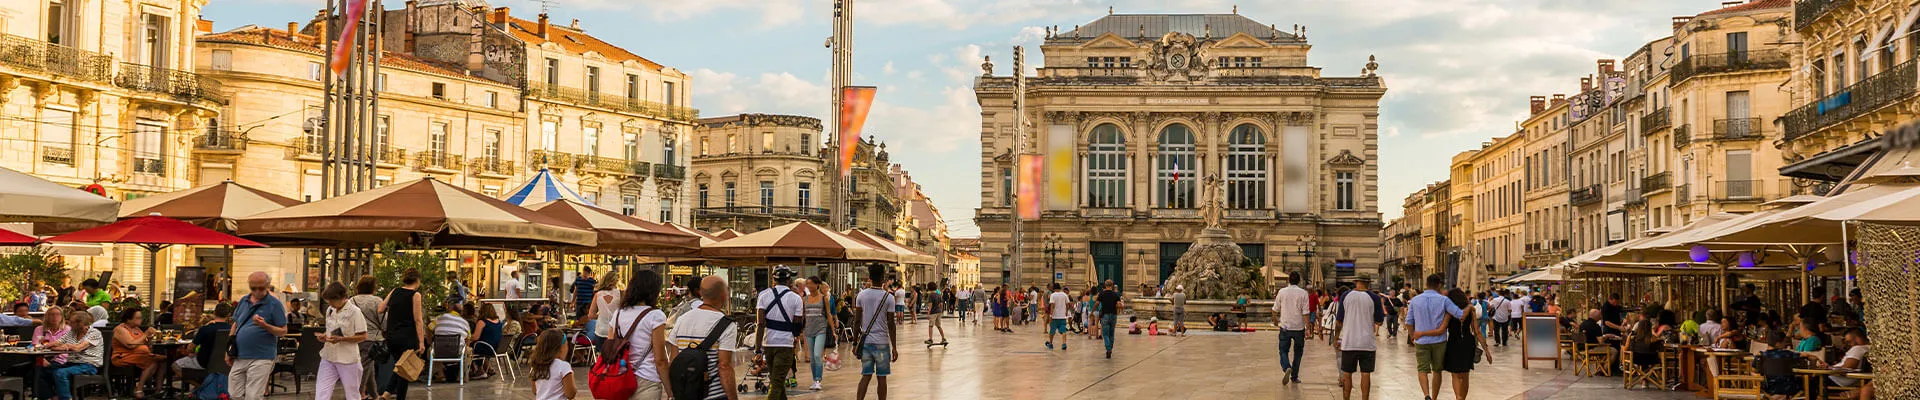 Photographie du cœur historique de la ville de Montpellier